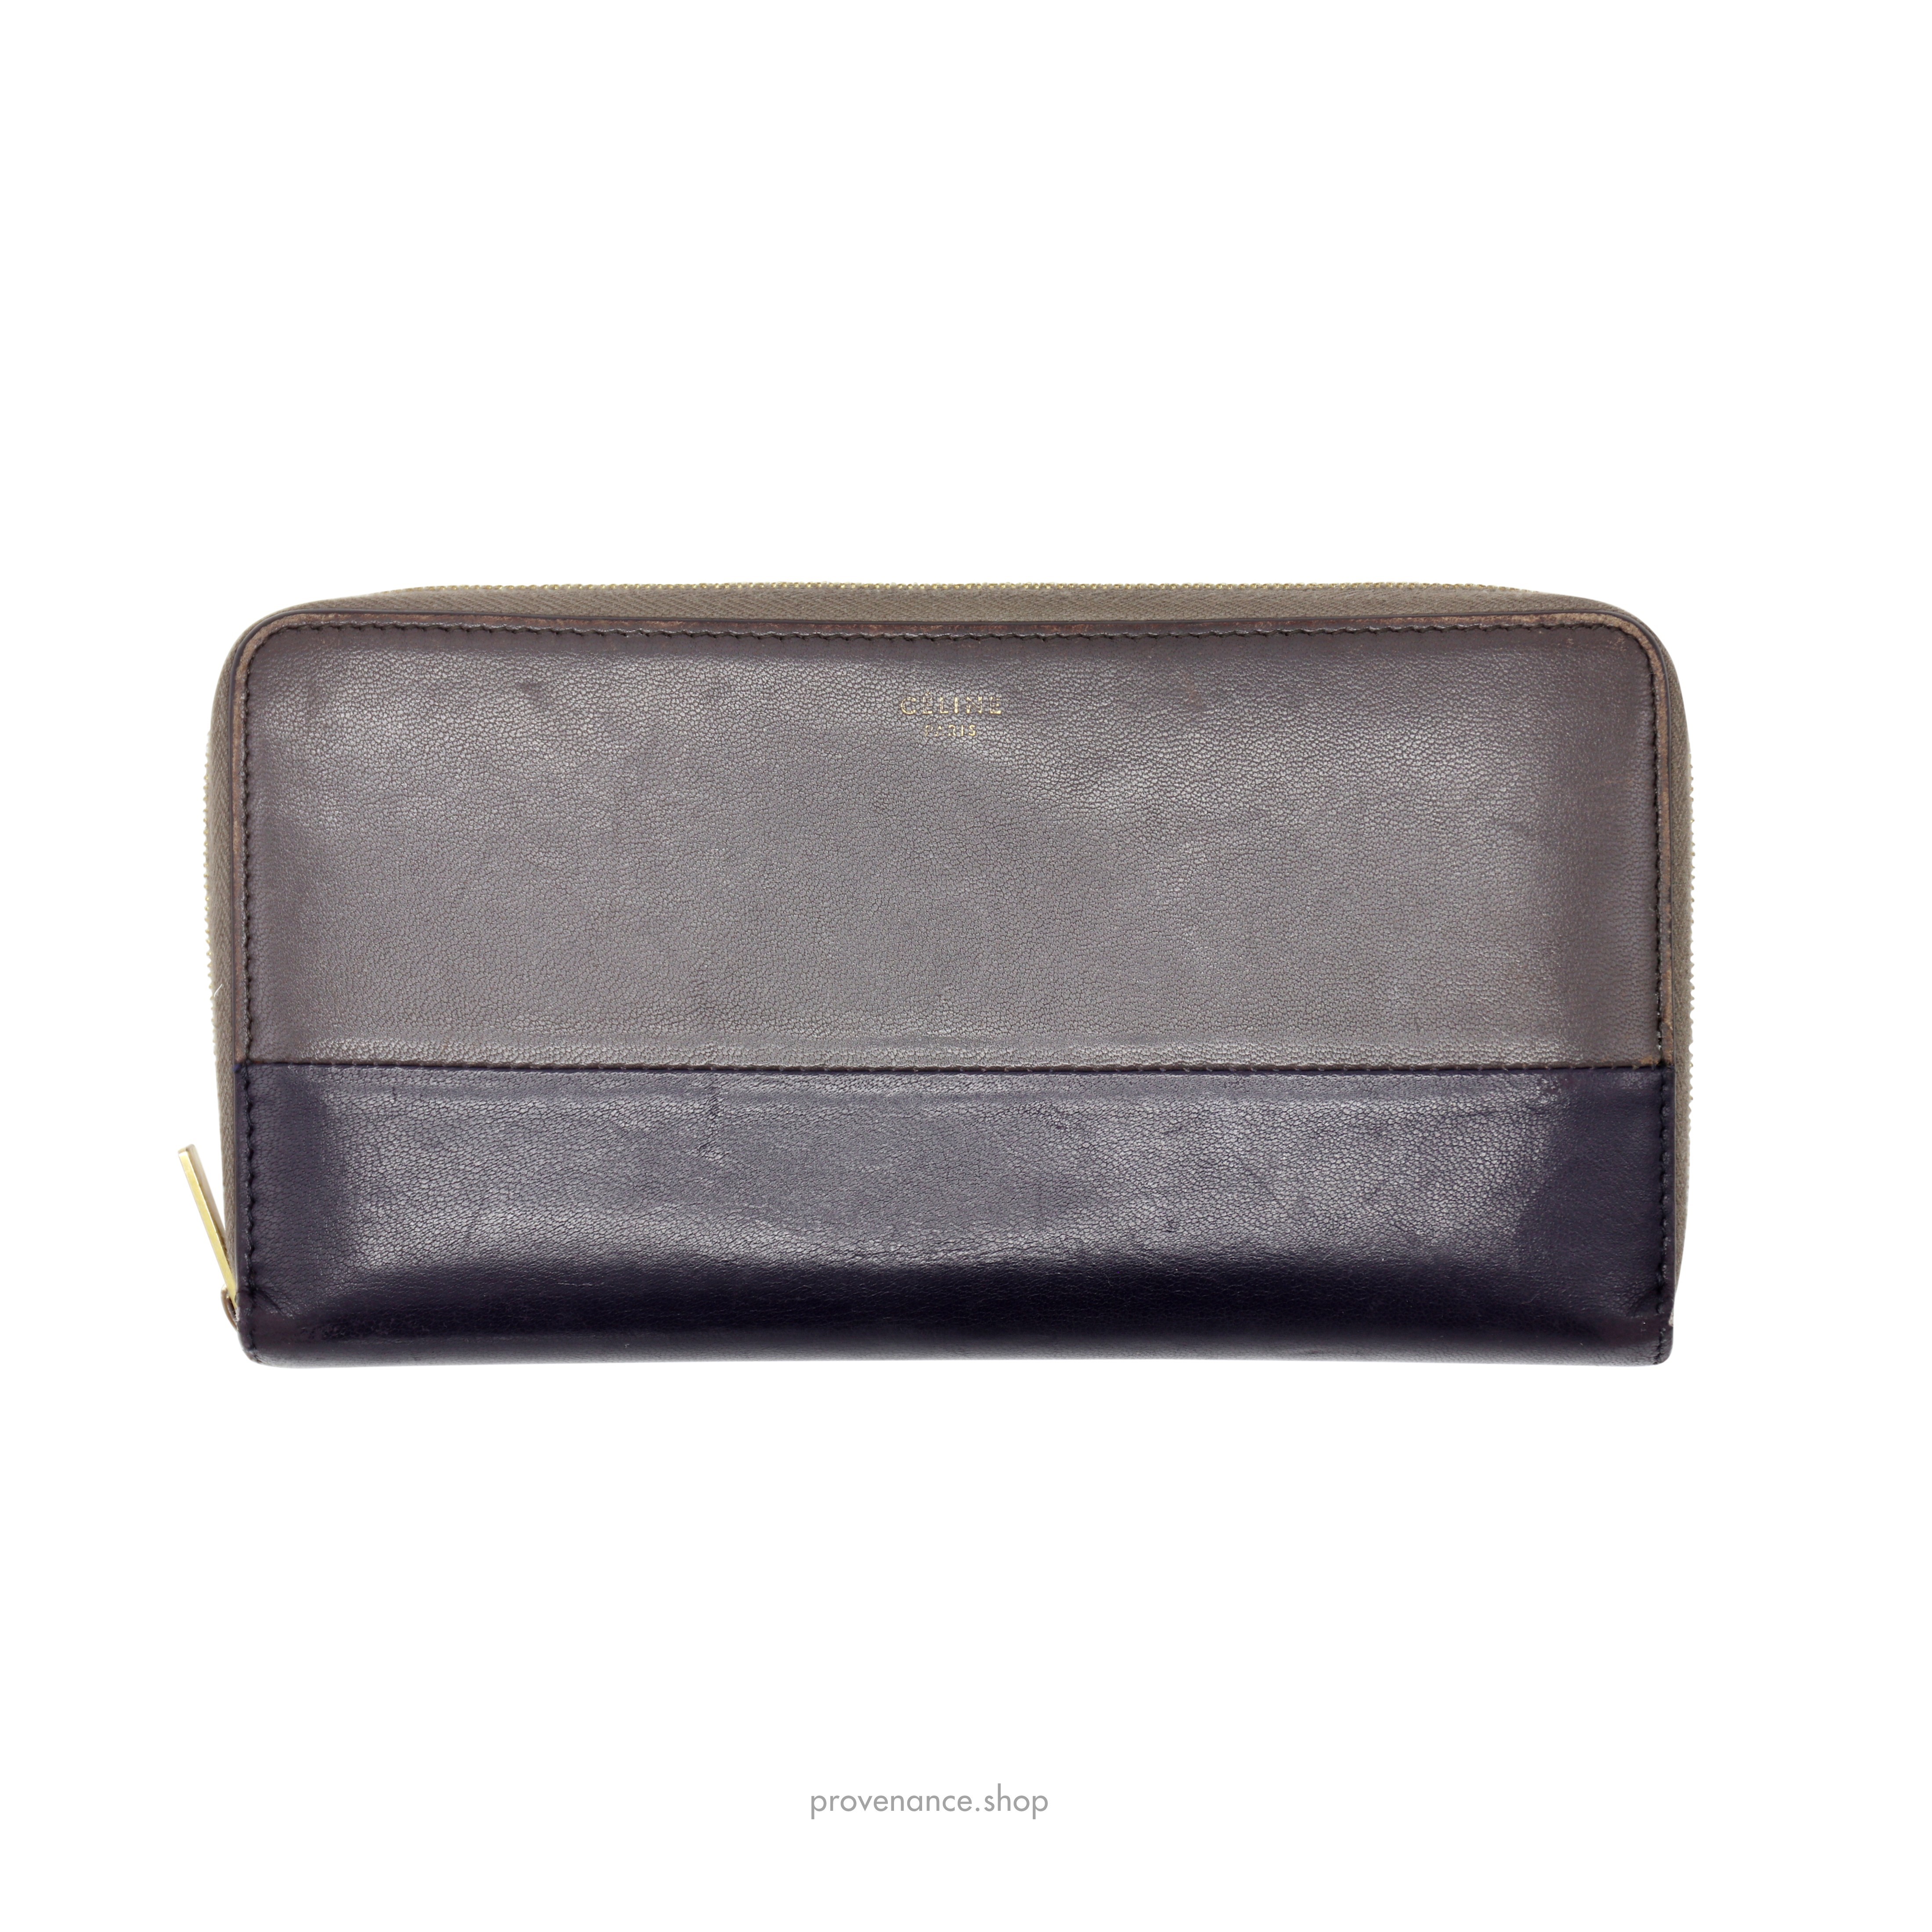 Celine Multifunction Zip Wallet - Grey/Black - 1